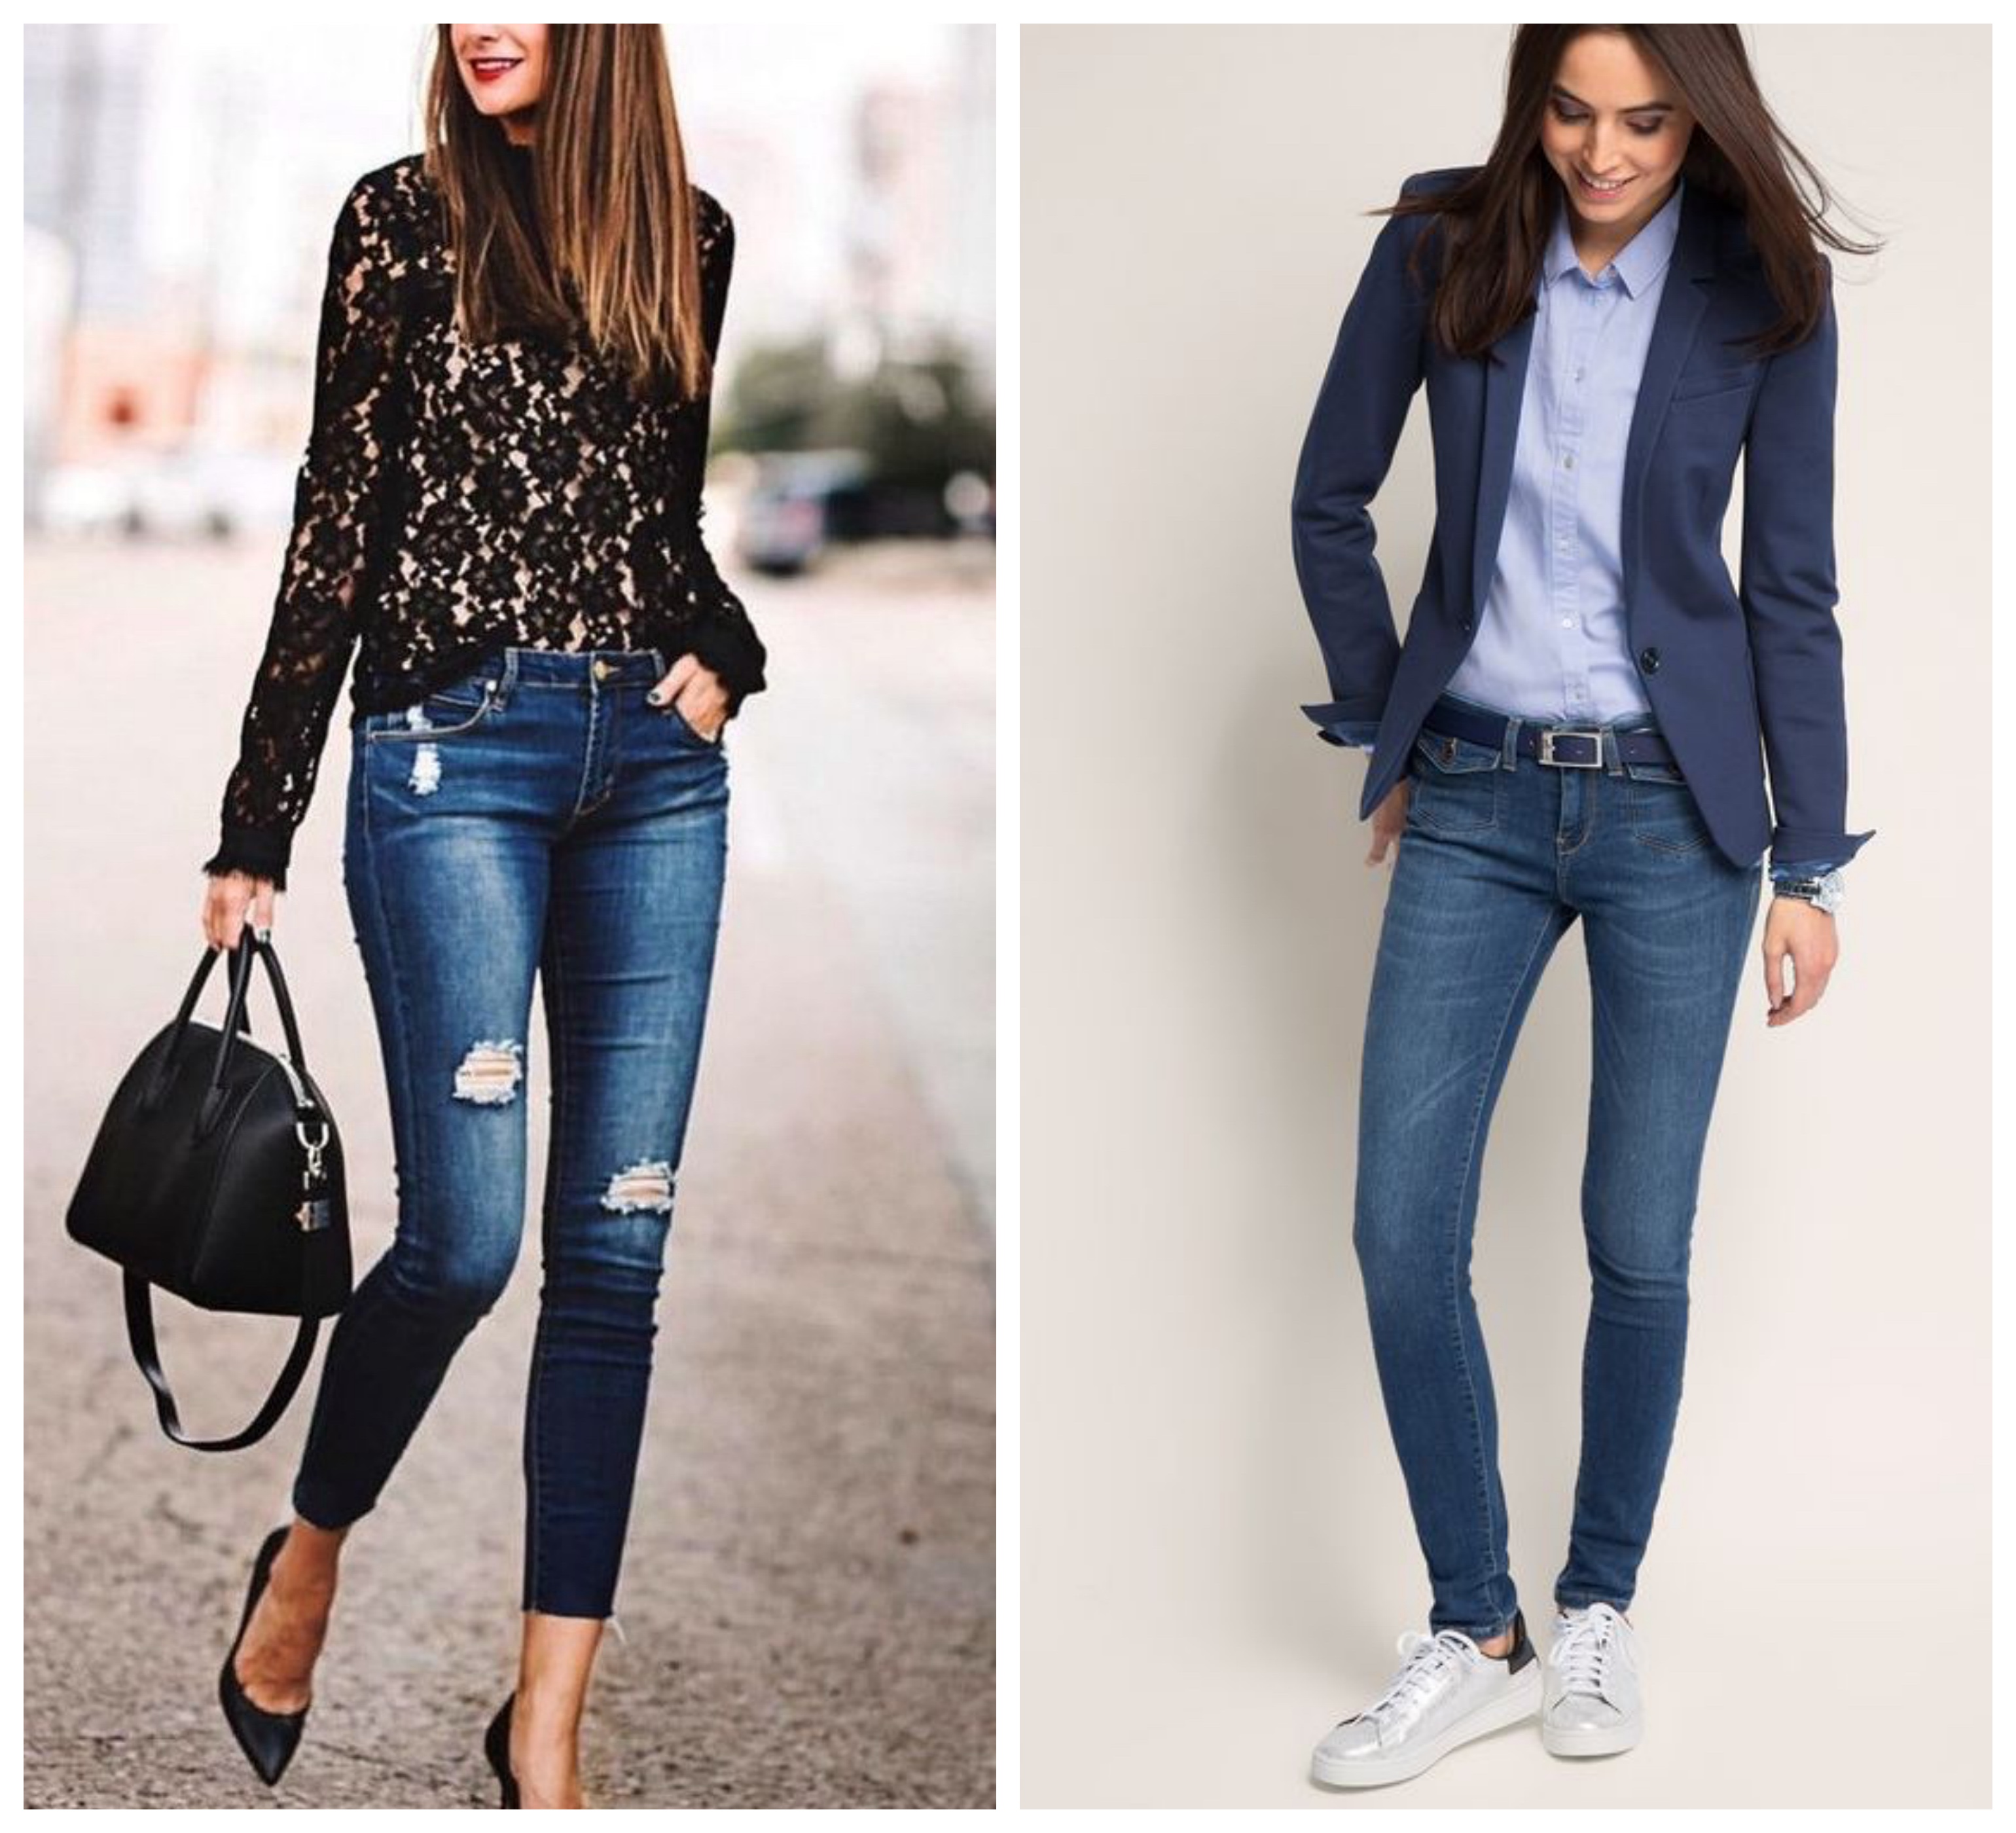 Узкие джинсы женские